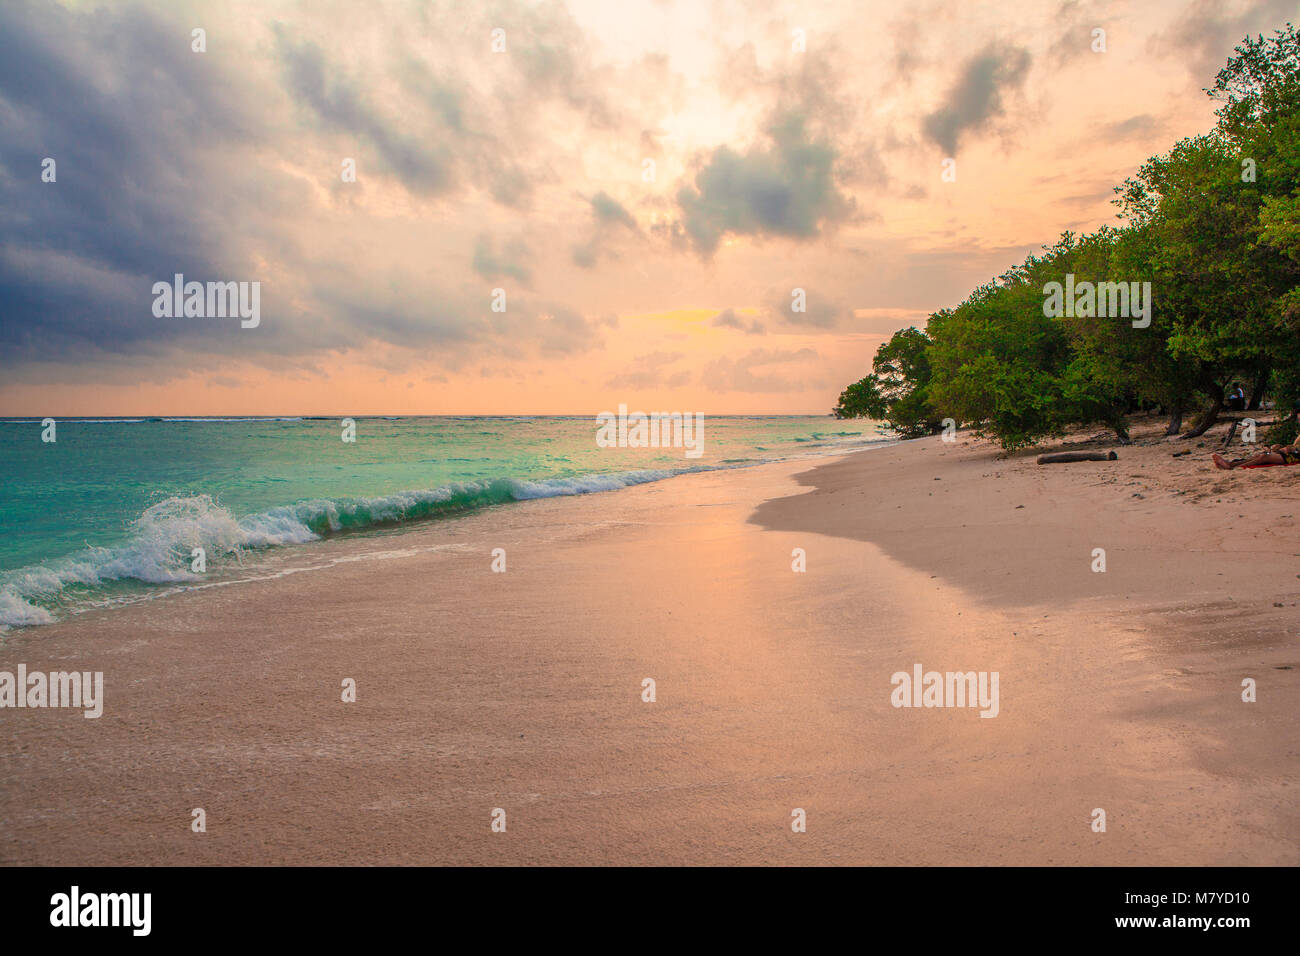 Himmlische Strand menschenleer, mit türkisblauem Wasser und rosa gelb Himmel bei Sonnenuntergang, mit Bäumen auf dem Sand in der Nähe des Meeres Stockfoto